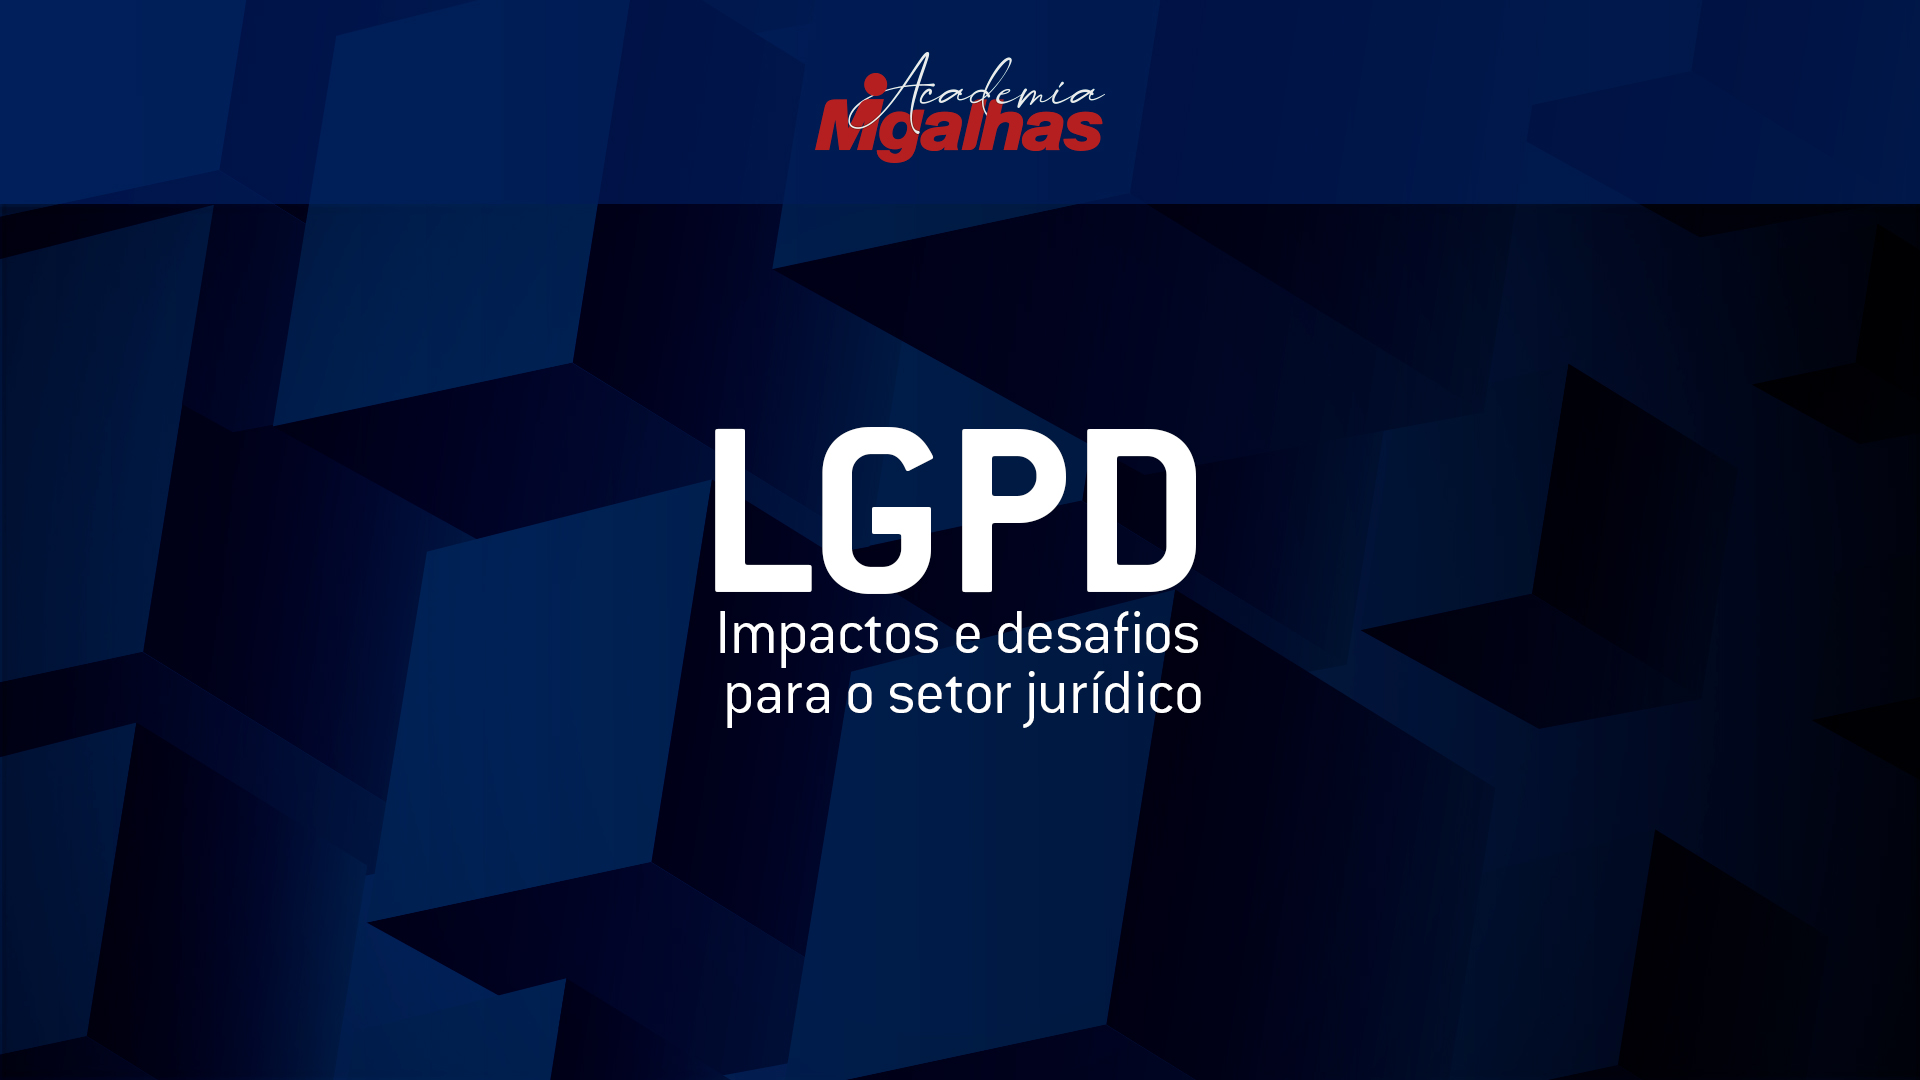 LGPD: Impactos e desafios para o setor jurídico